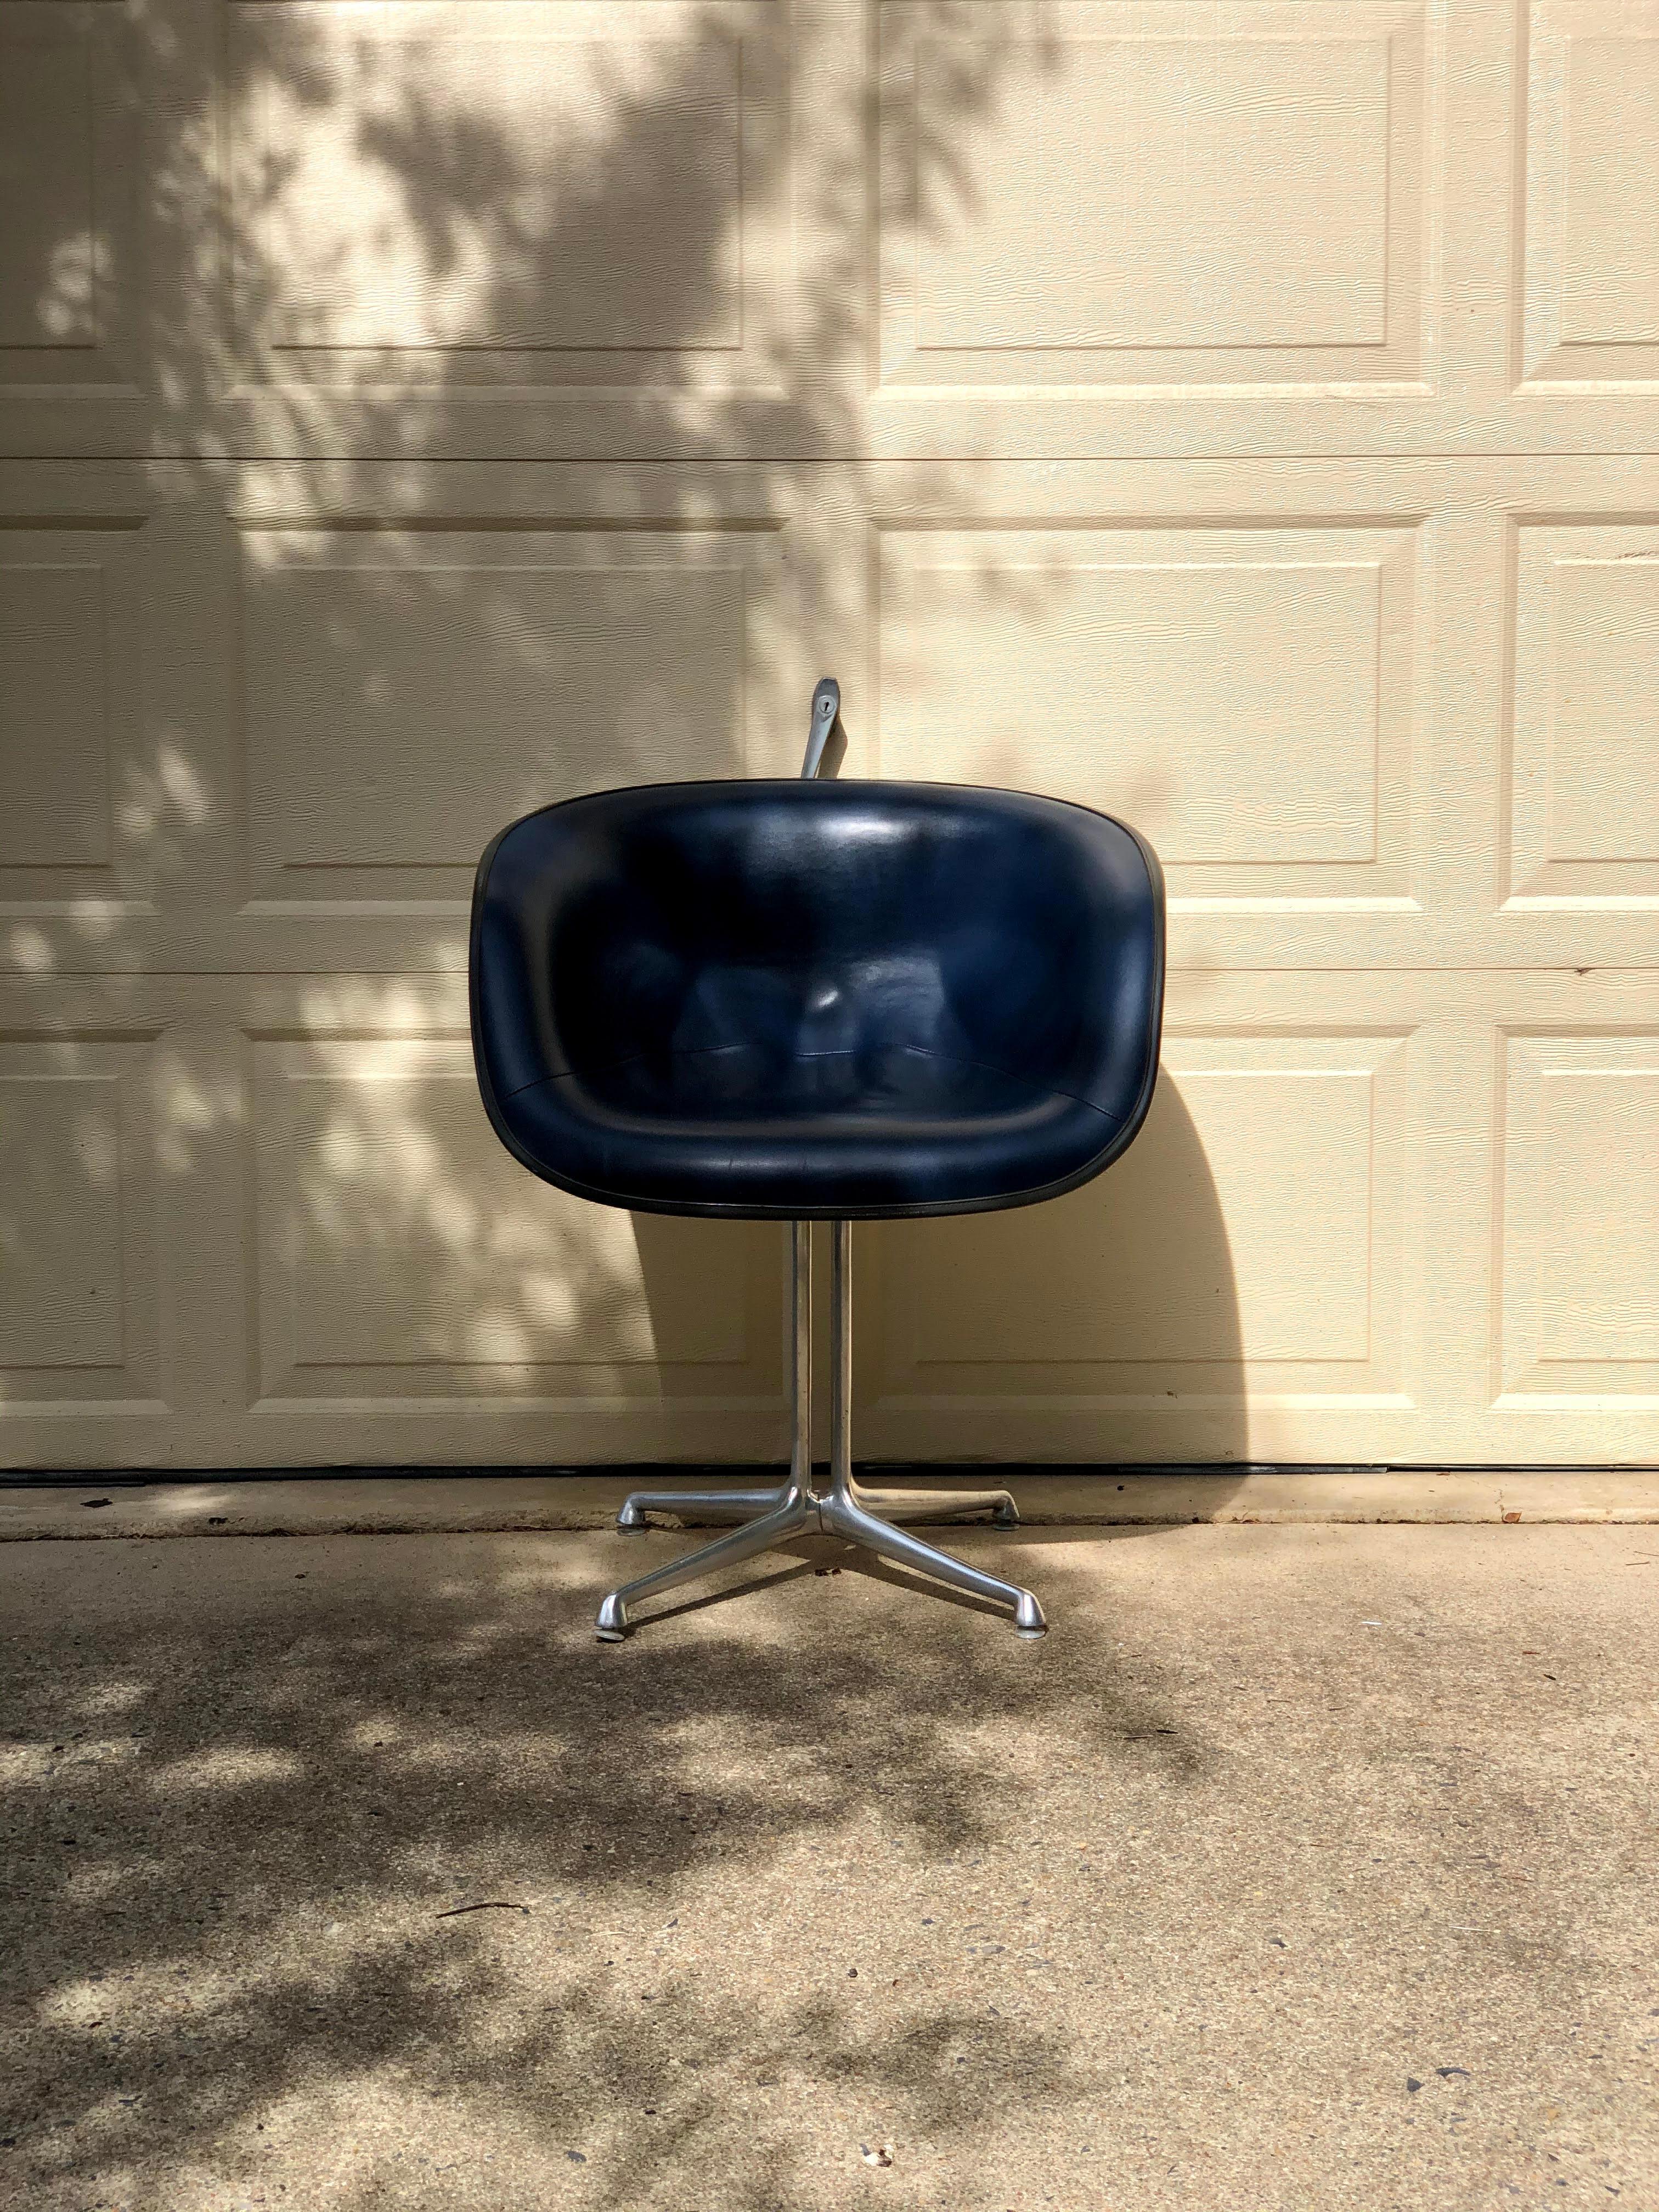 Ce fauteuil est l'une des deux nouvelles chaises en fibre de verre conçues par Charles et Ray Eames en 1961, à la demande d'Alexander Girard, qui avait besoin de sièges pour son nouveau restaurant de Manhattan, La Fonda Del Sol. Certains